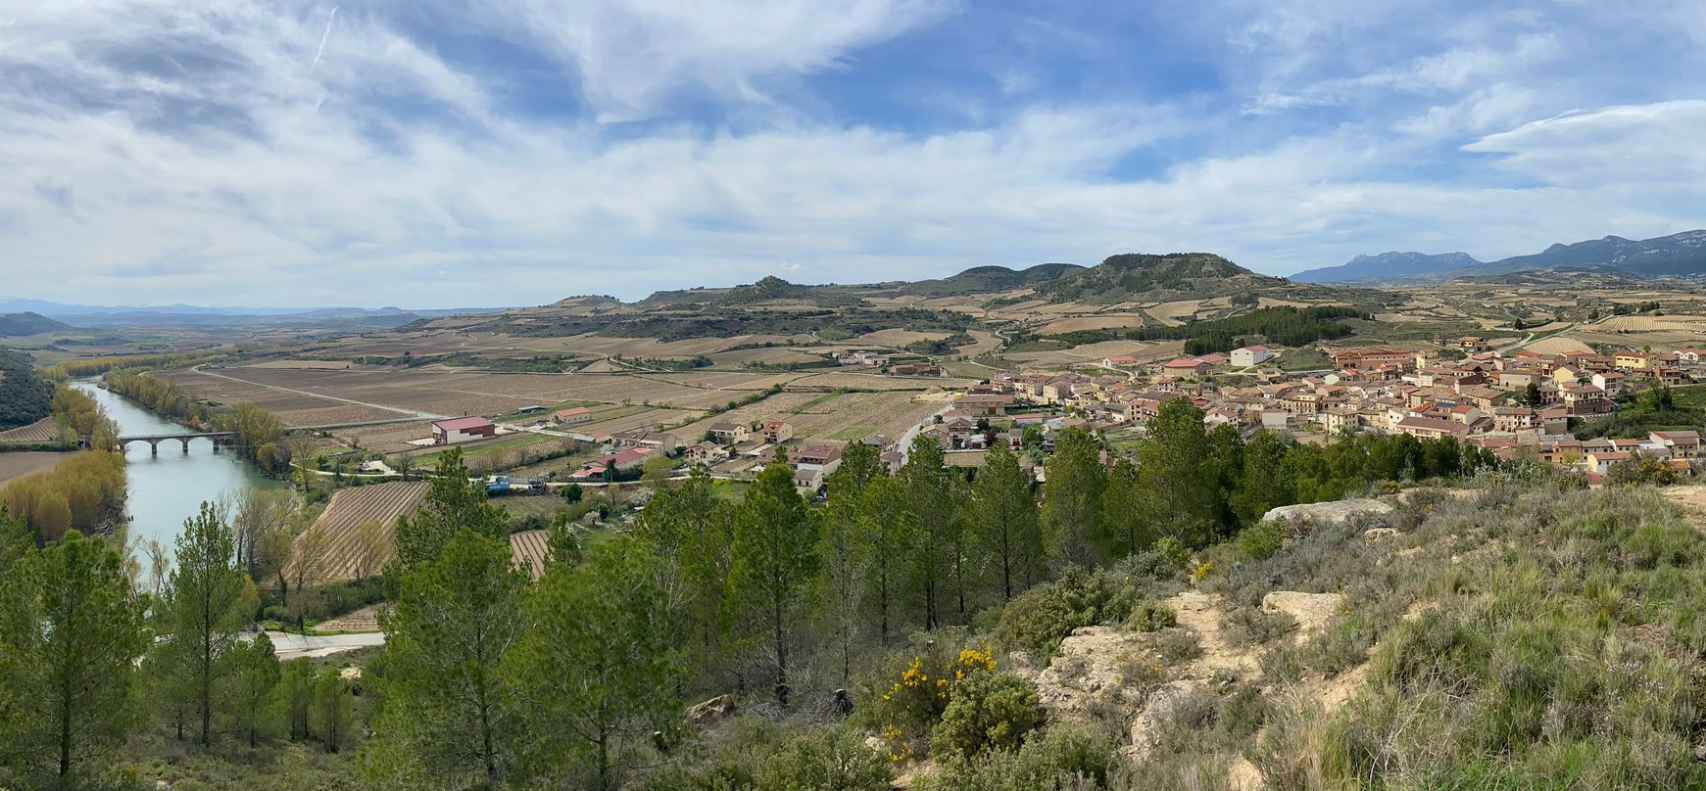 Vista desde un mirador de Baños de Ebro